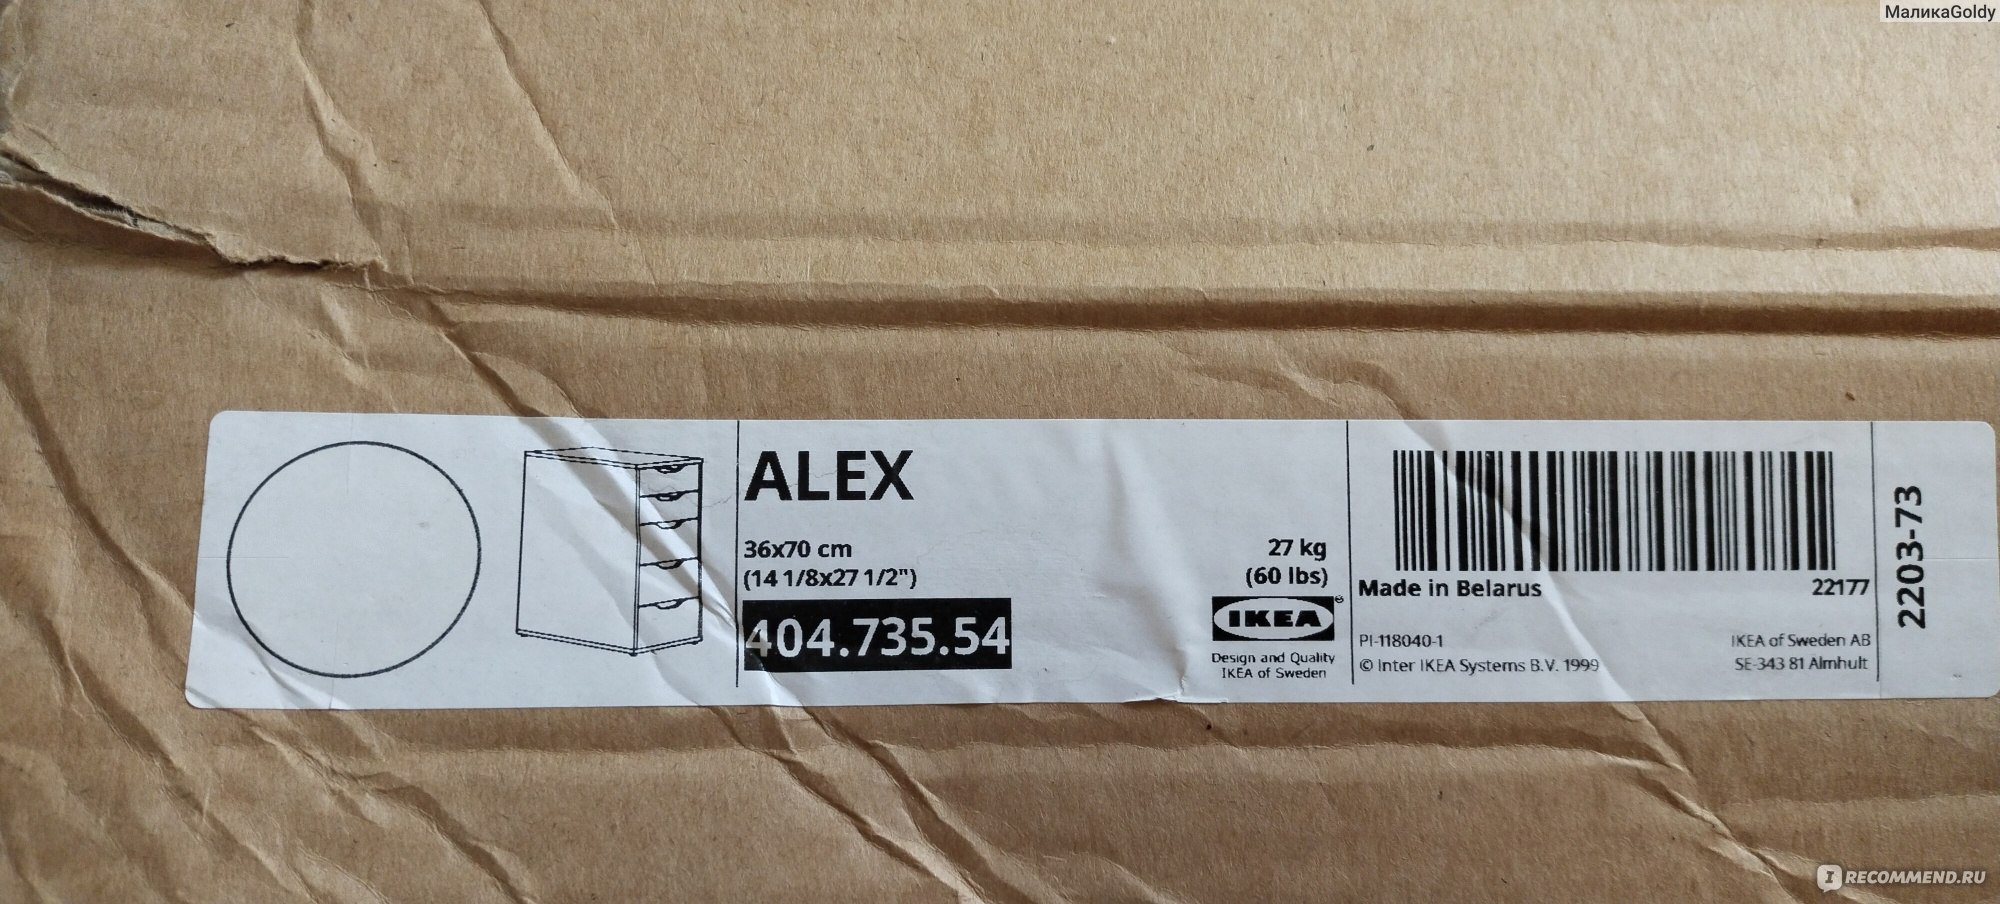 Алекс тумба с ящиками белый 36x70 см